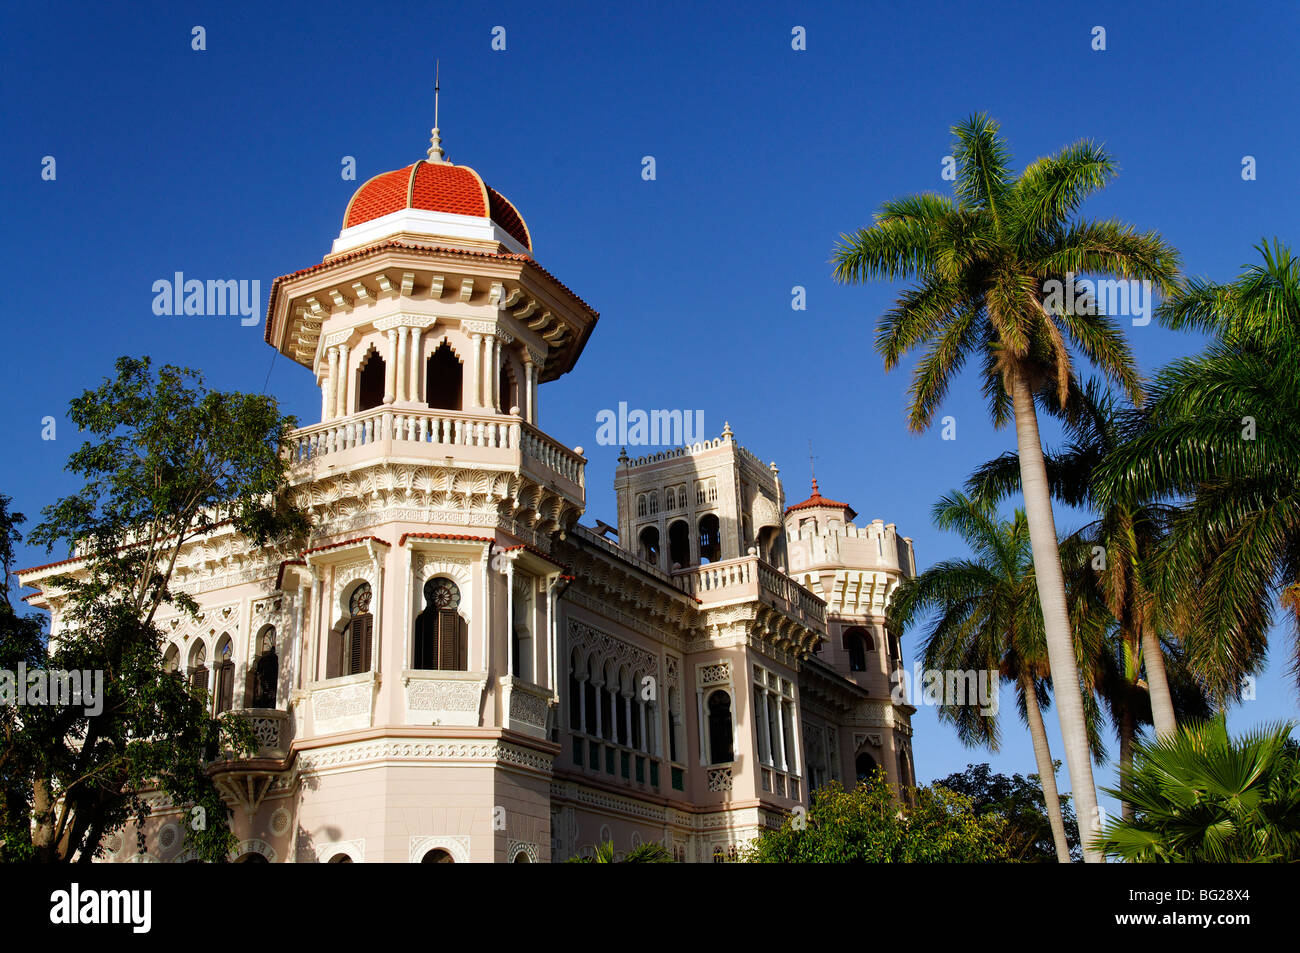 Valle's Palace, de la baie de Jagua, Cienfuesgos, Cuba Banque D'Images